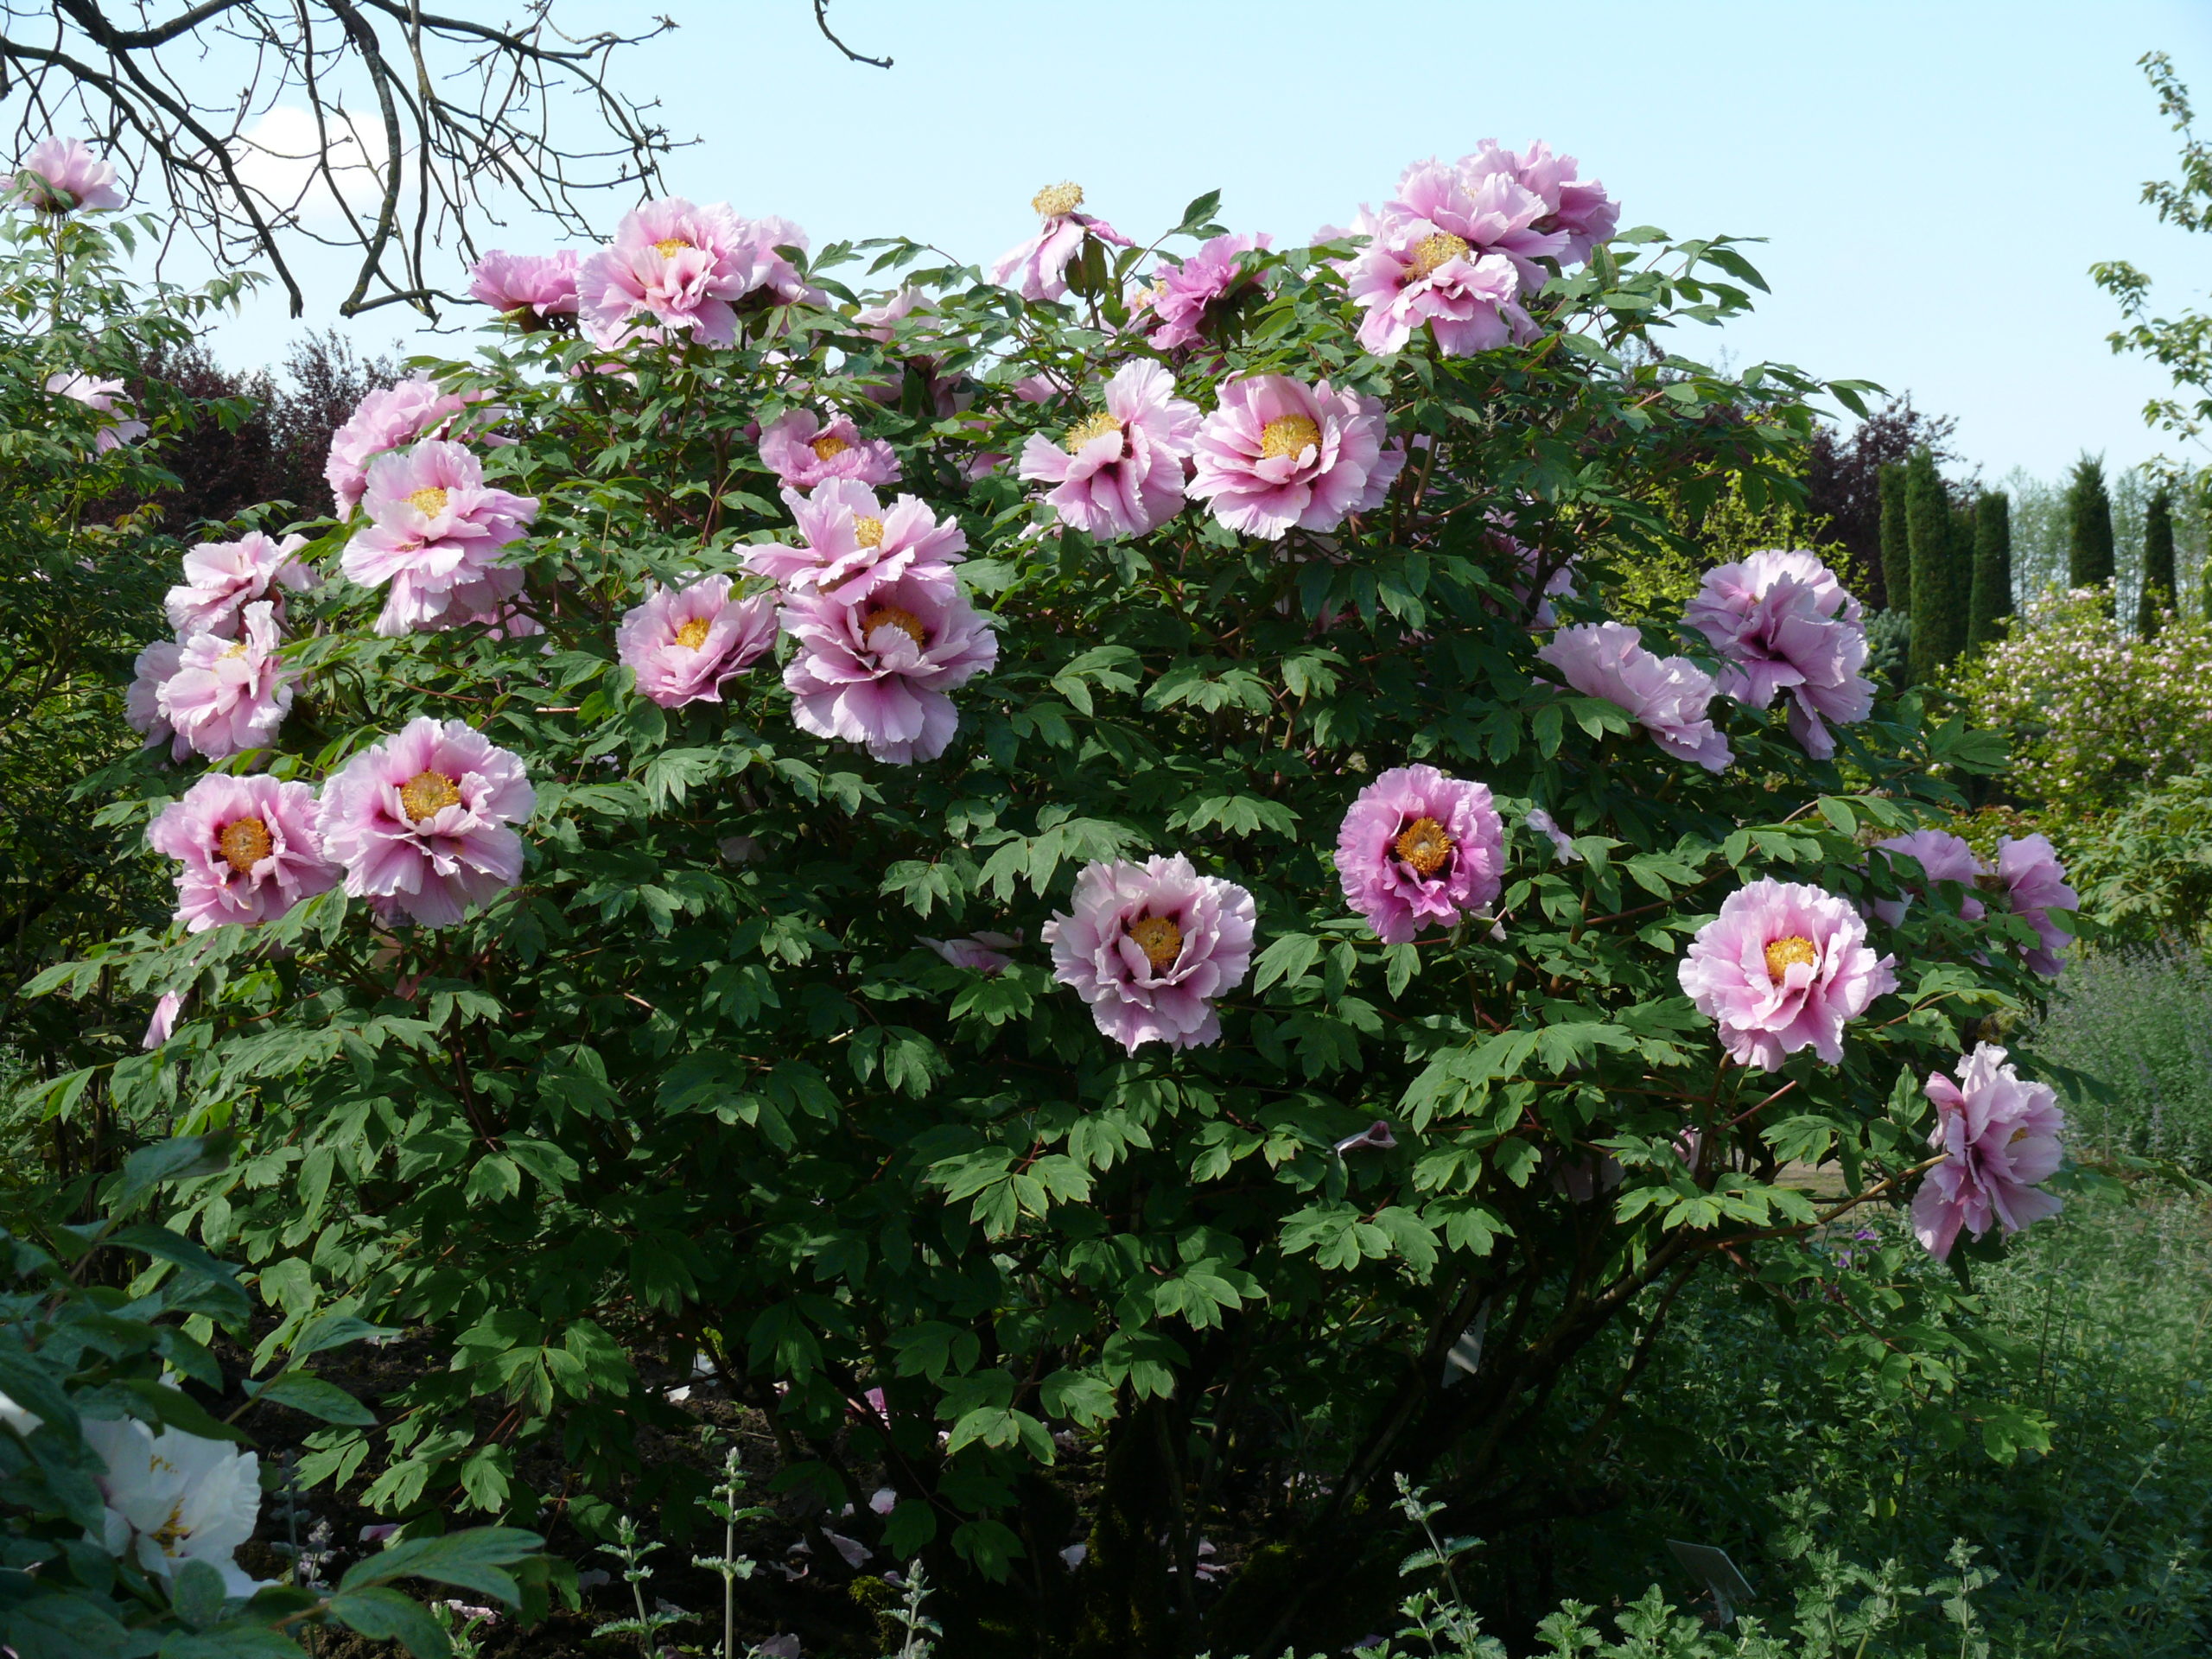 Strauchpfingstrosen-Blüte | Arboretum Ellerhoop